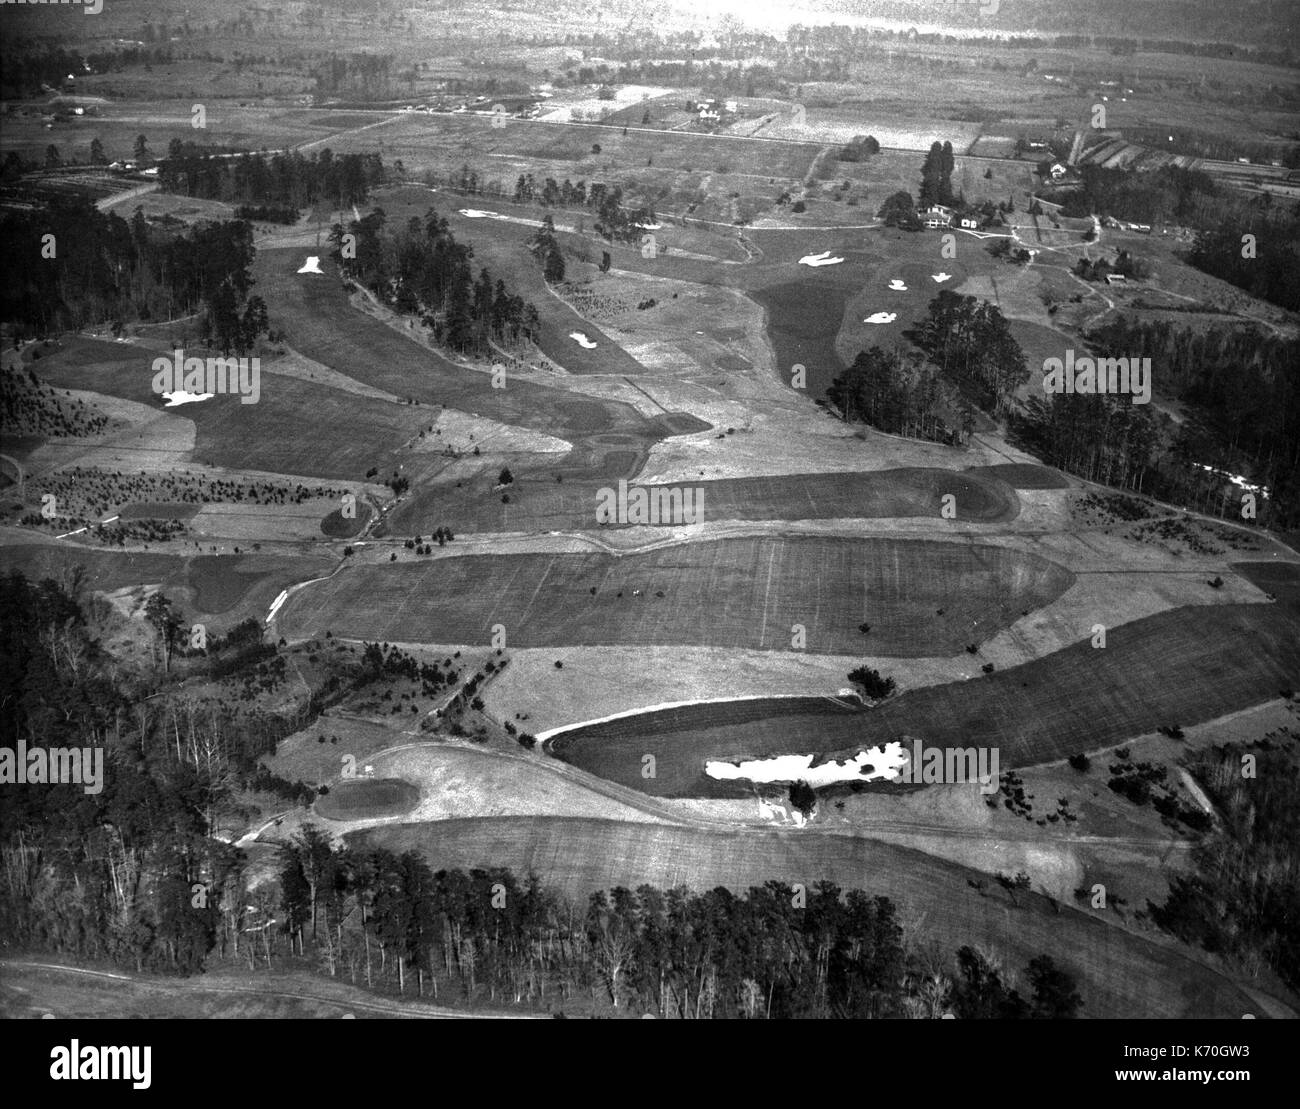 Augusta, GA - El campo de golf perfecto, que tiene sólo 22 trampas, conocido como el Augusta National Golf Club, establecidos por Robert Jones, Jr. de neumáticos, jubilado amateur y campeón del abierto y el Dr. Alister Mackenzie, tal como aparece en el aire. El 10 de enero de 1933. Foto de stock